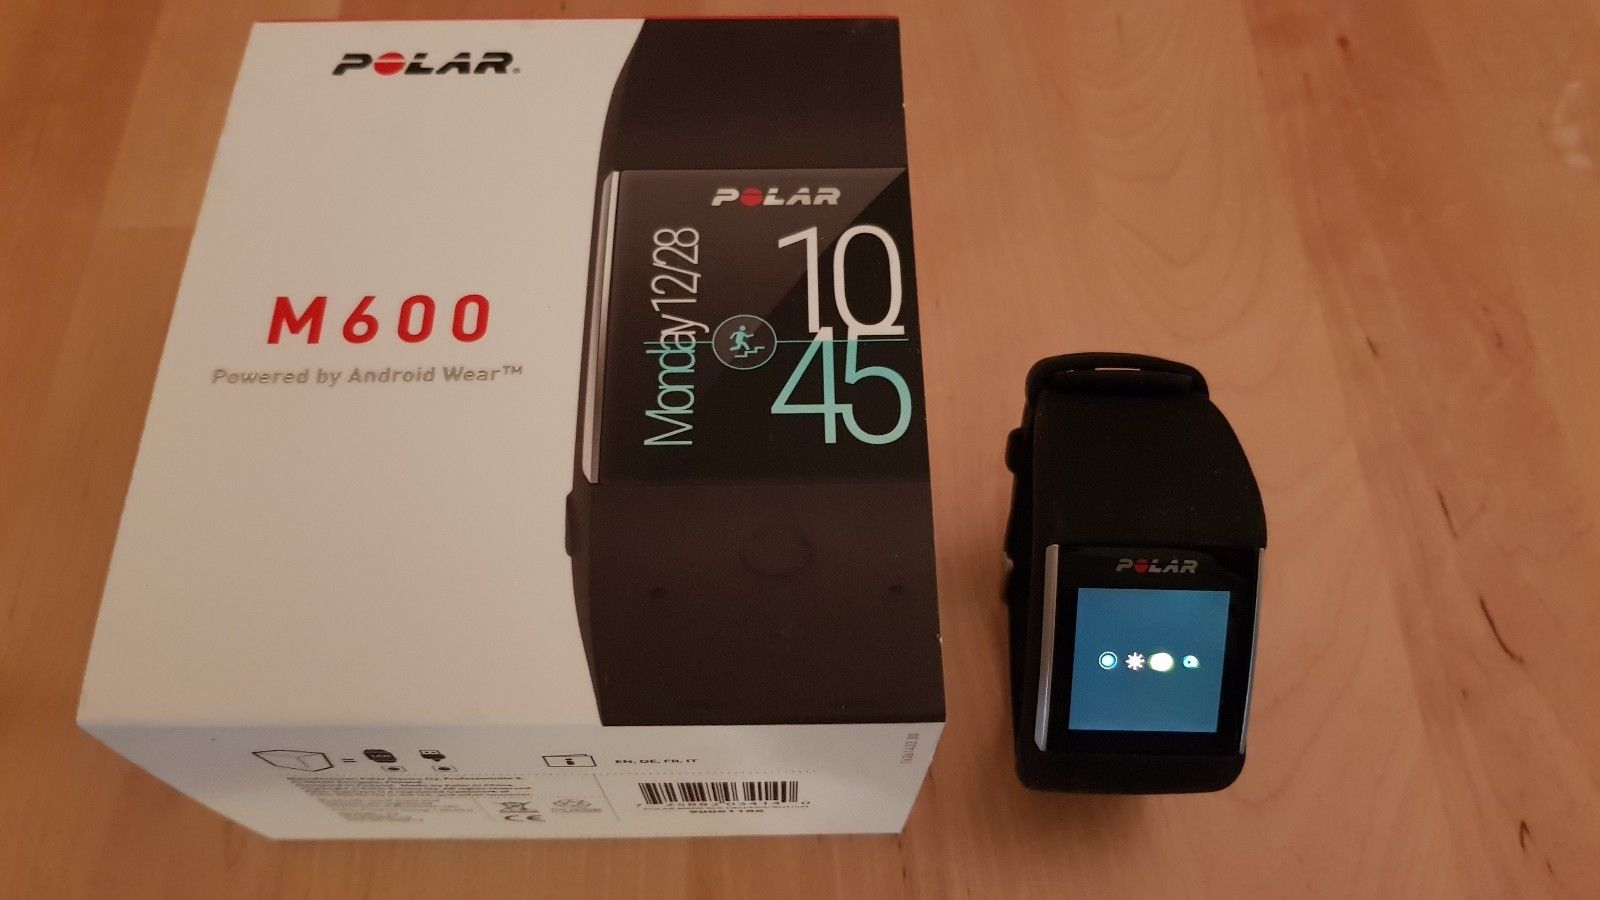 Polar M600 GPS Pulsuhr / Laufuhr / Smartwatch Android Wear 2.0 mit Rechnung OVP